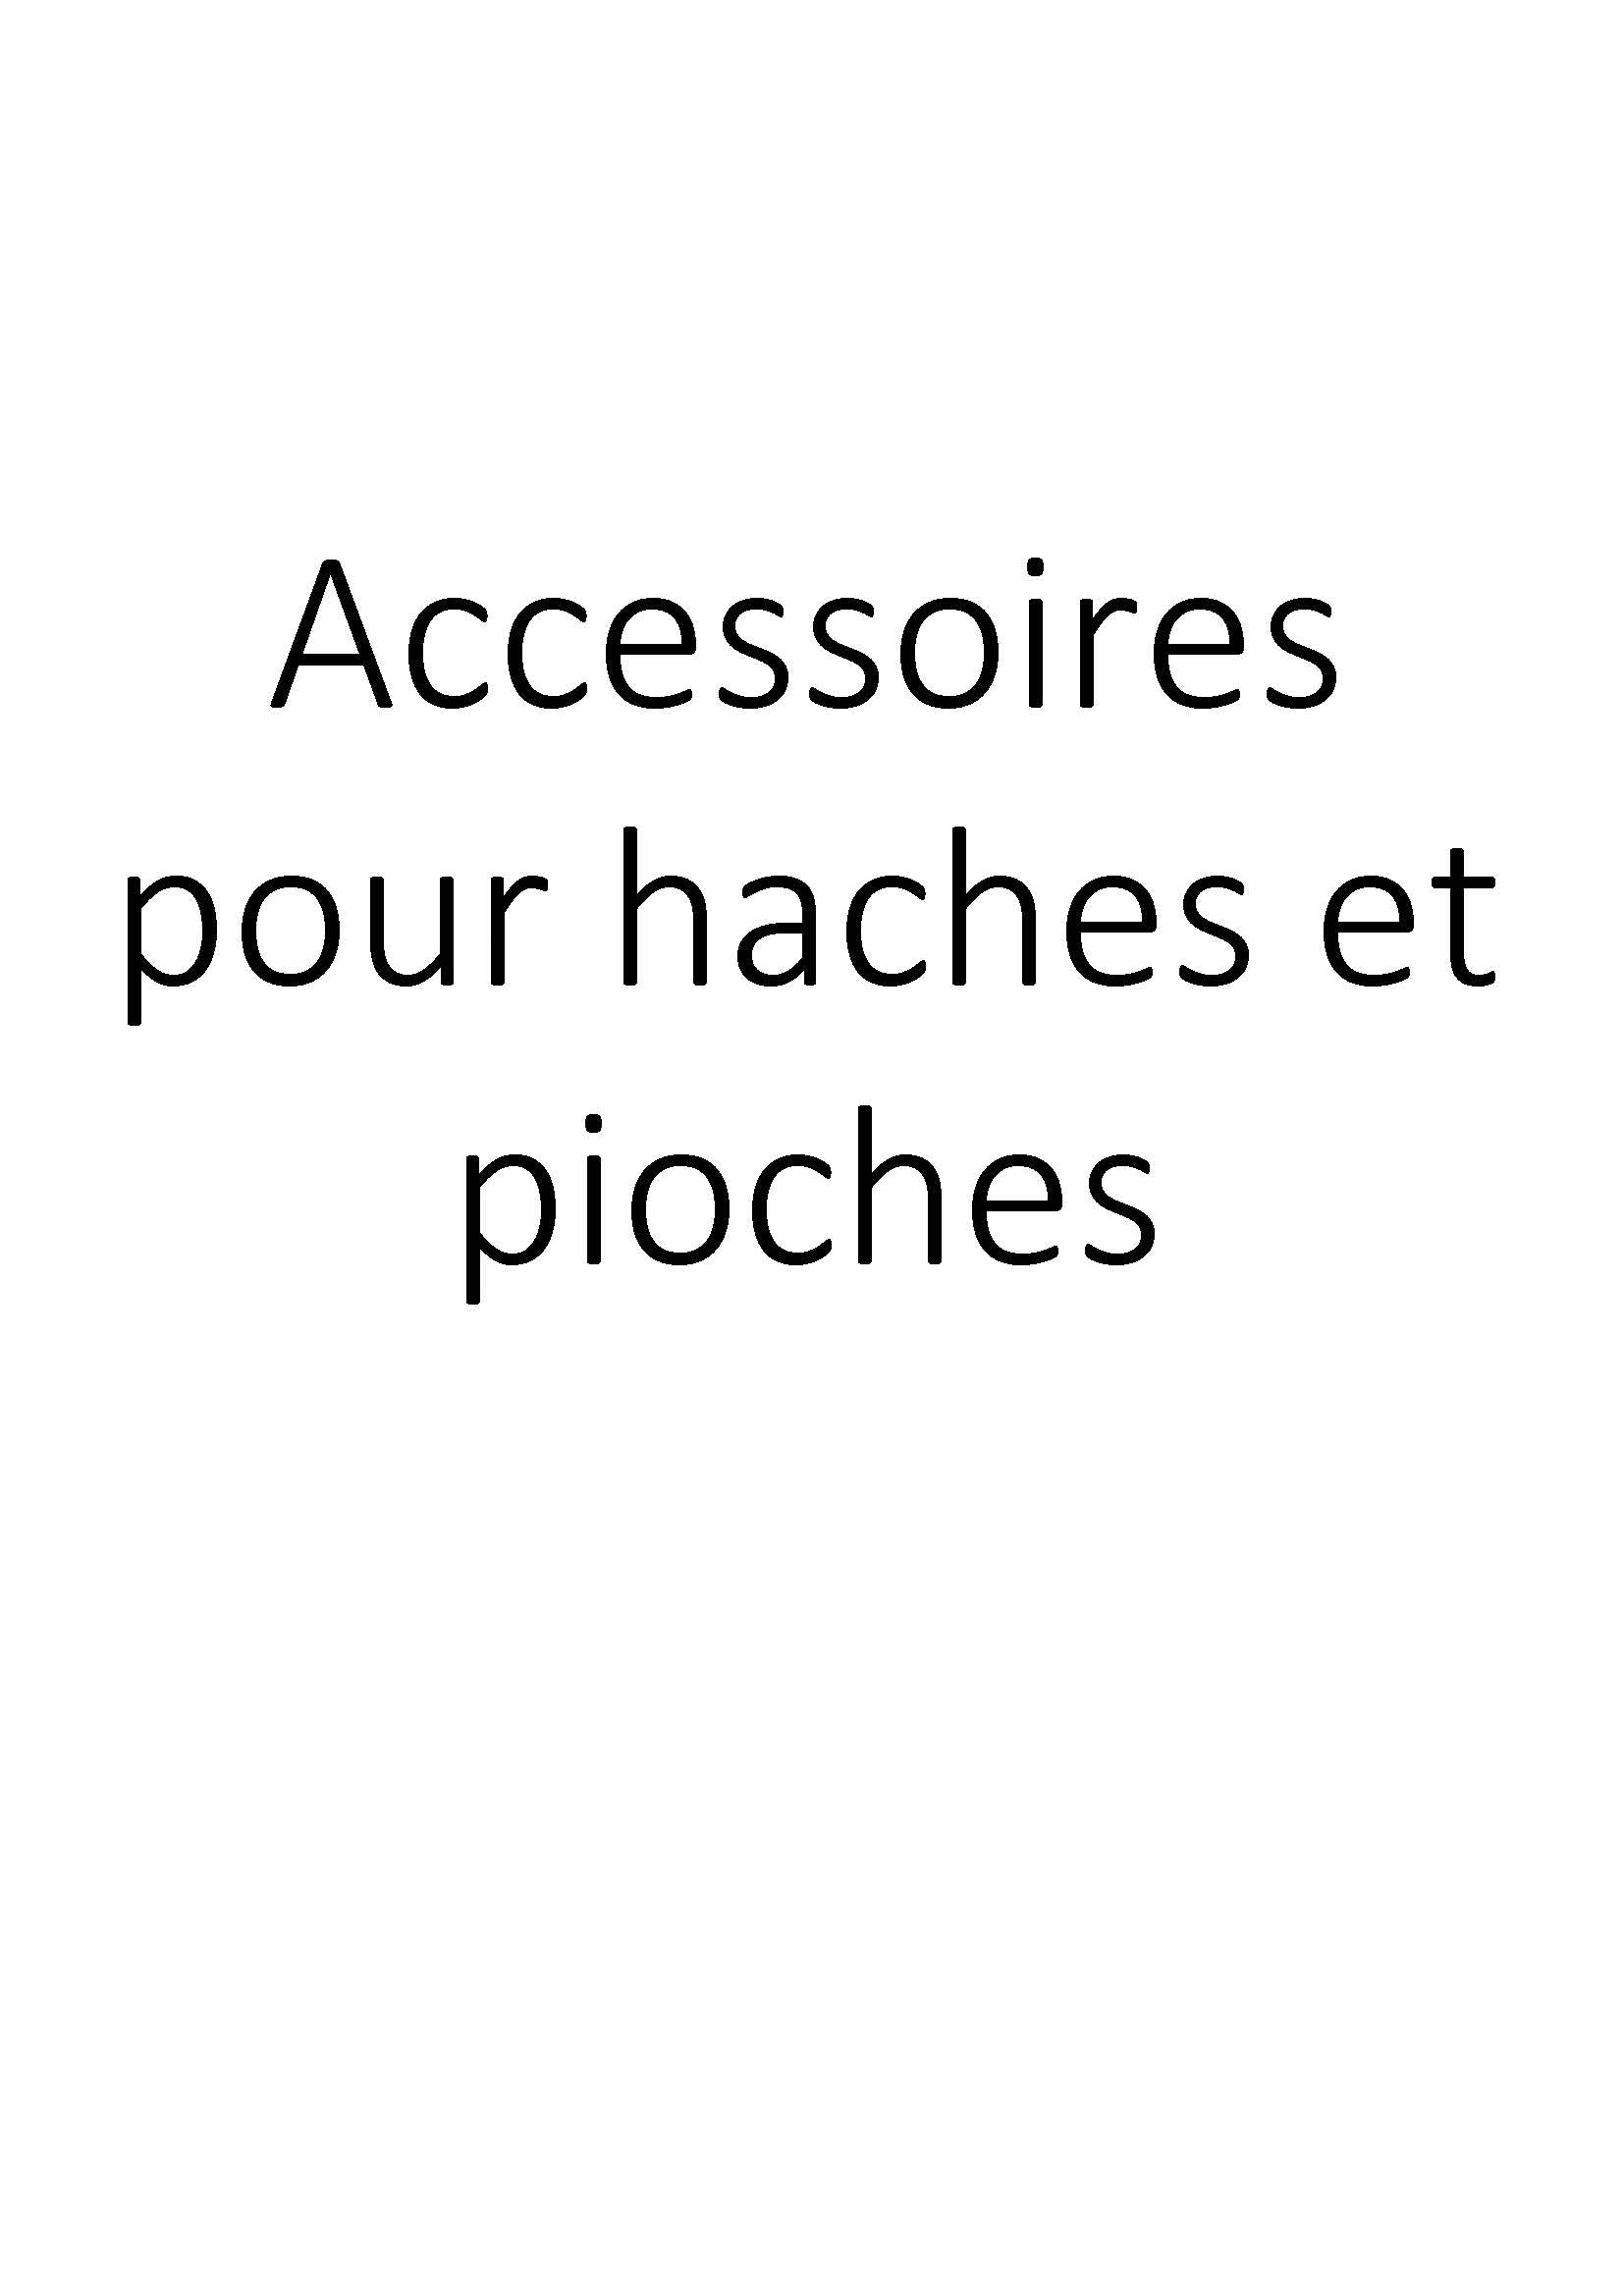 Accessoires pour haches et pioches clicktofournisseur.com